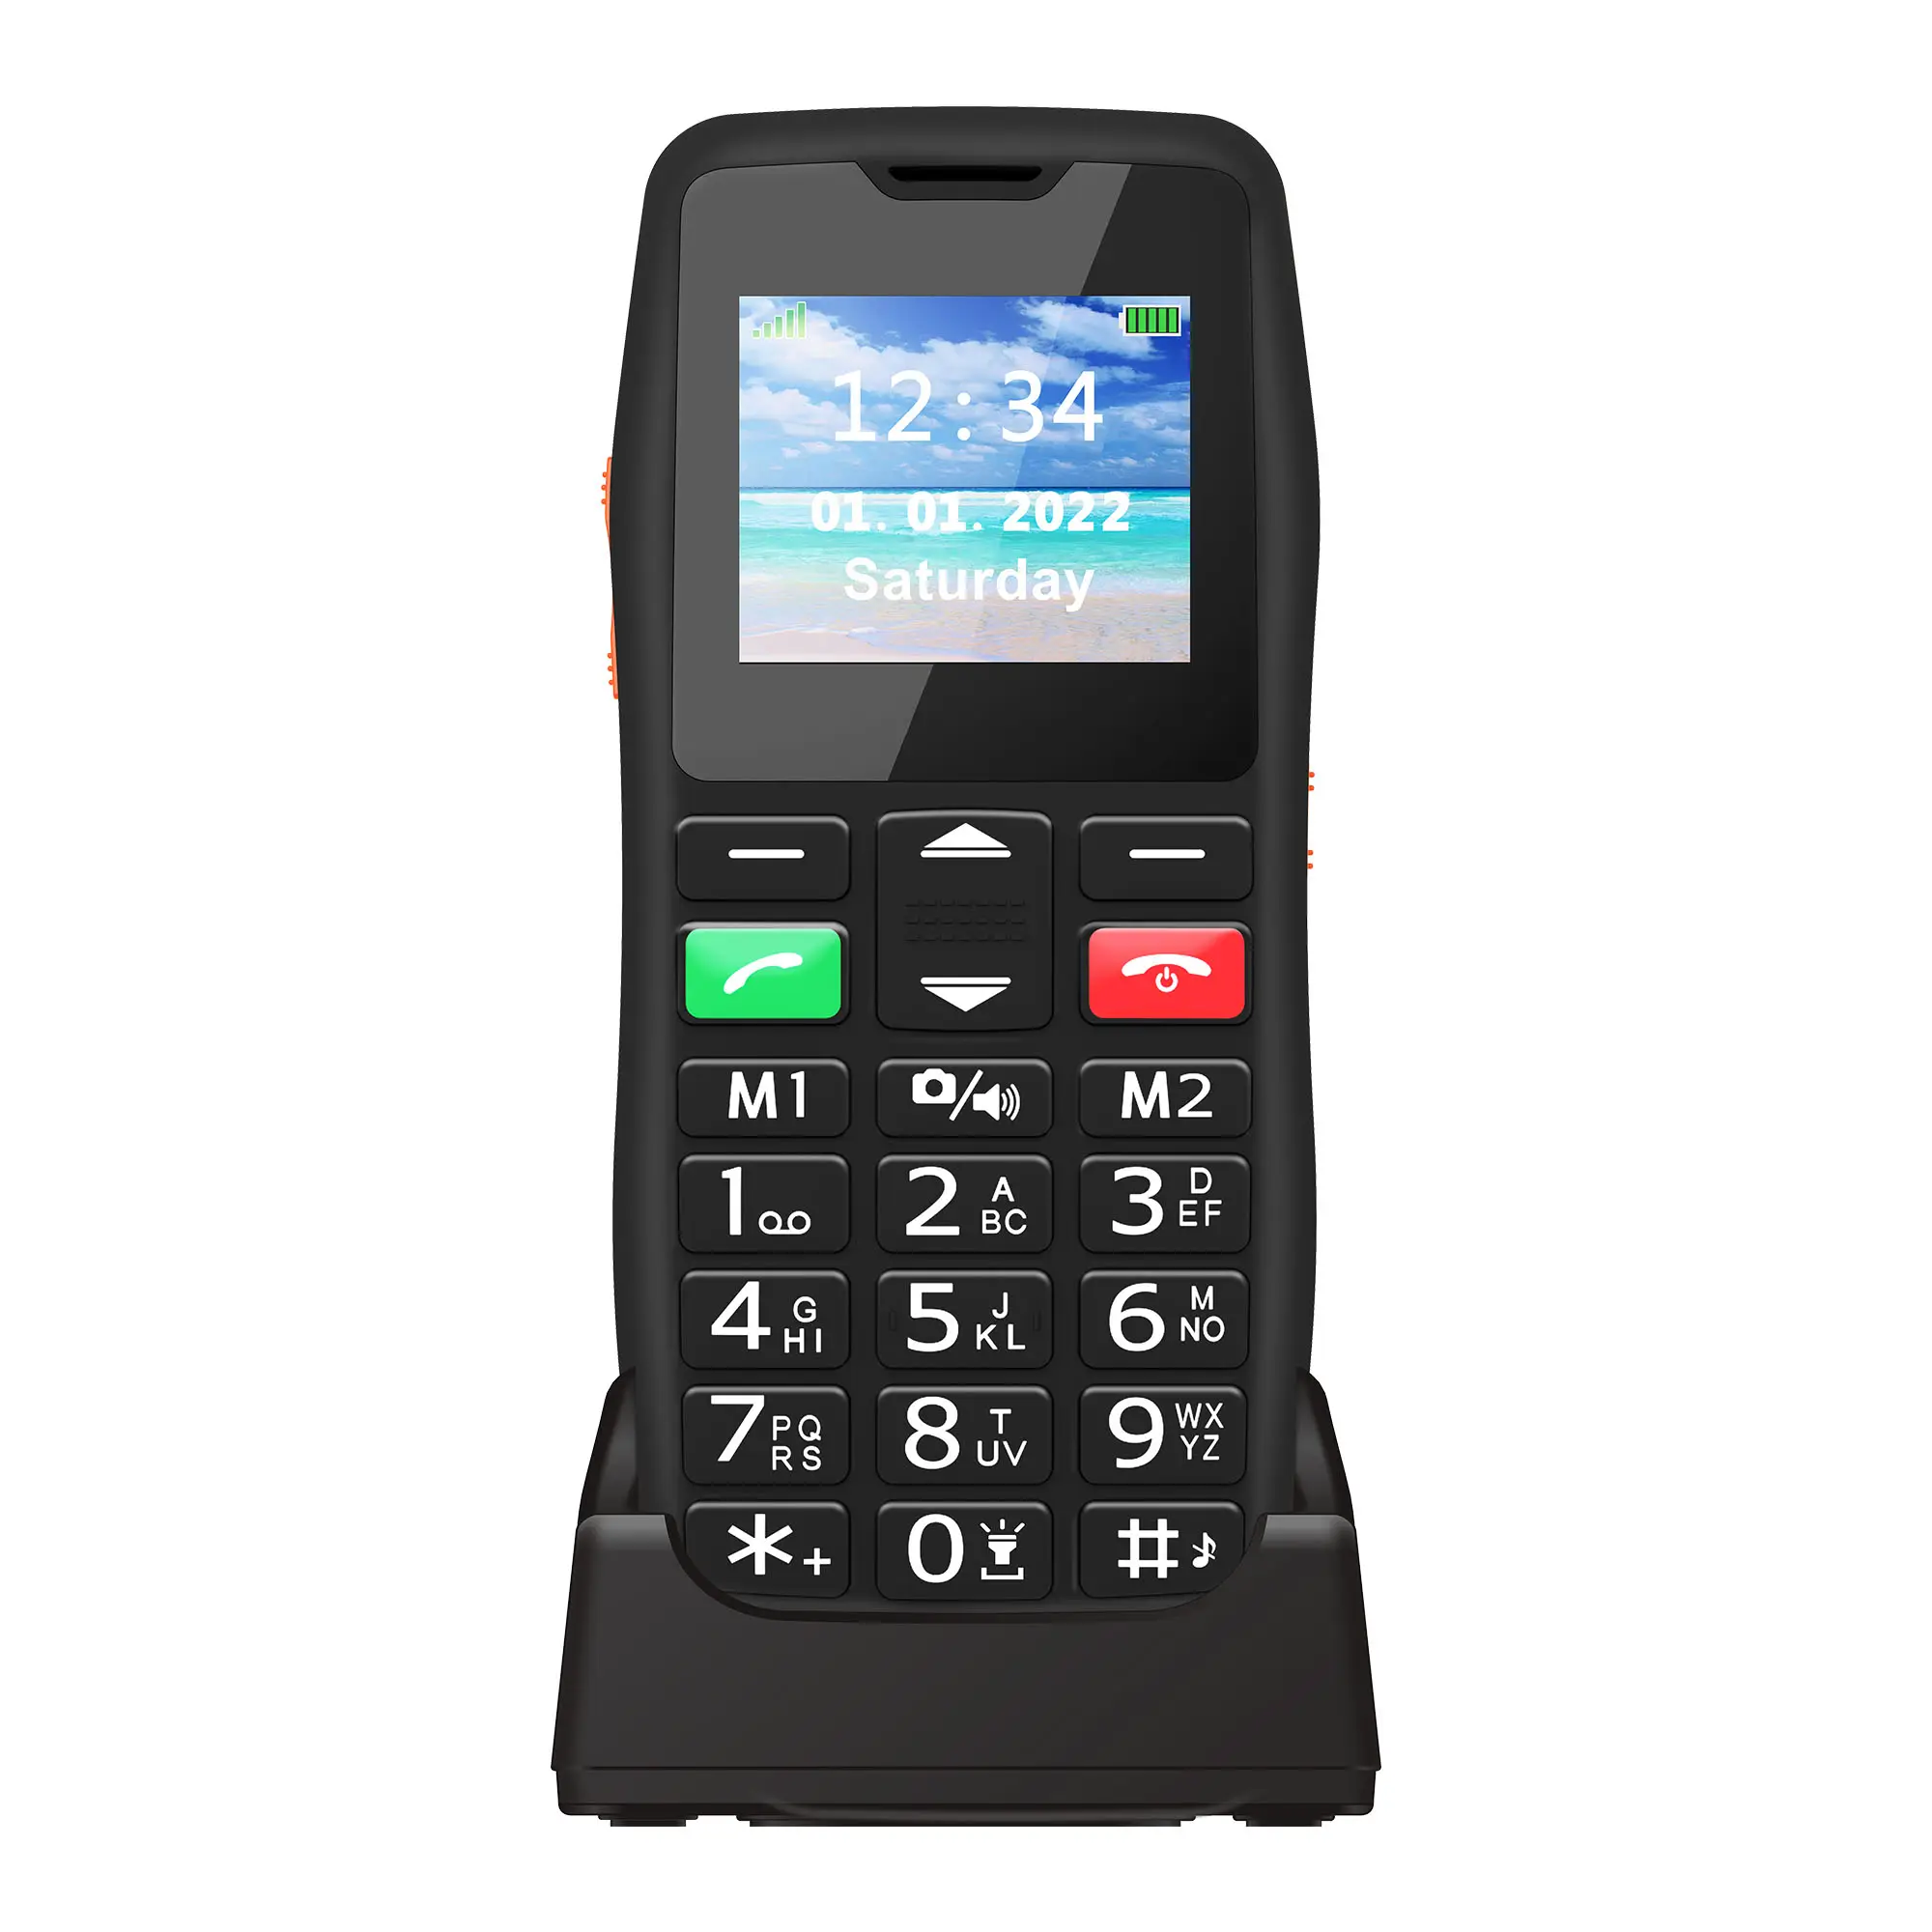 D105-2G Hot Selling 32M + 32M Camera Senior Mobiele Telefoon Met Gsm Netwerk Ontgrendeld Gaming Mobiele Telefoons